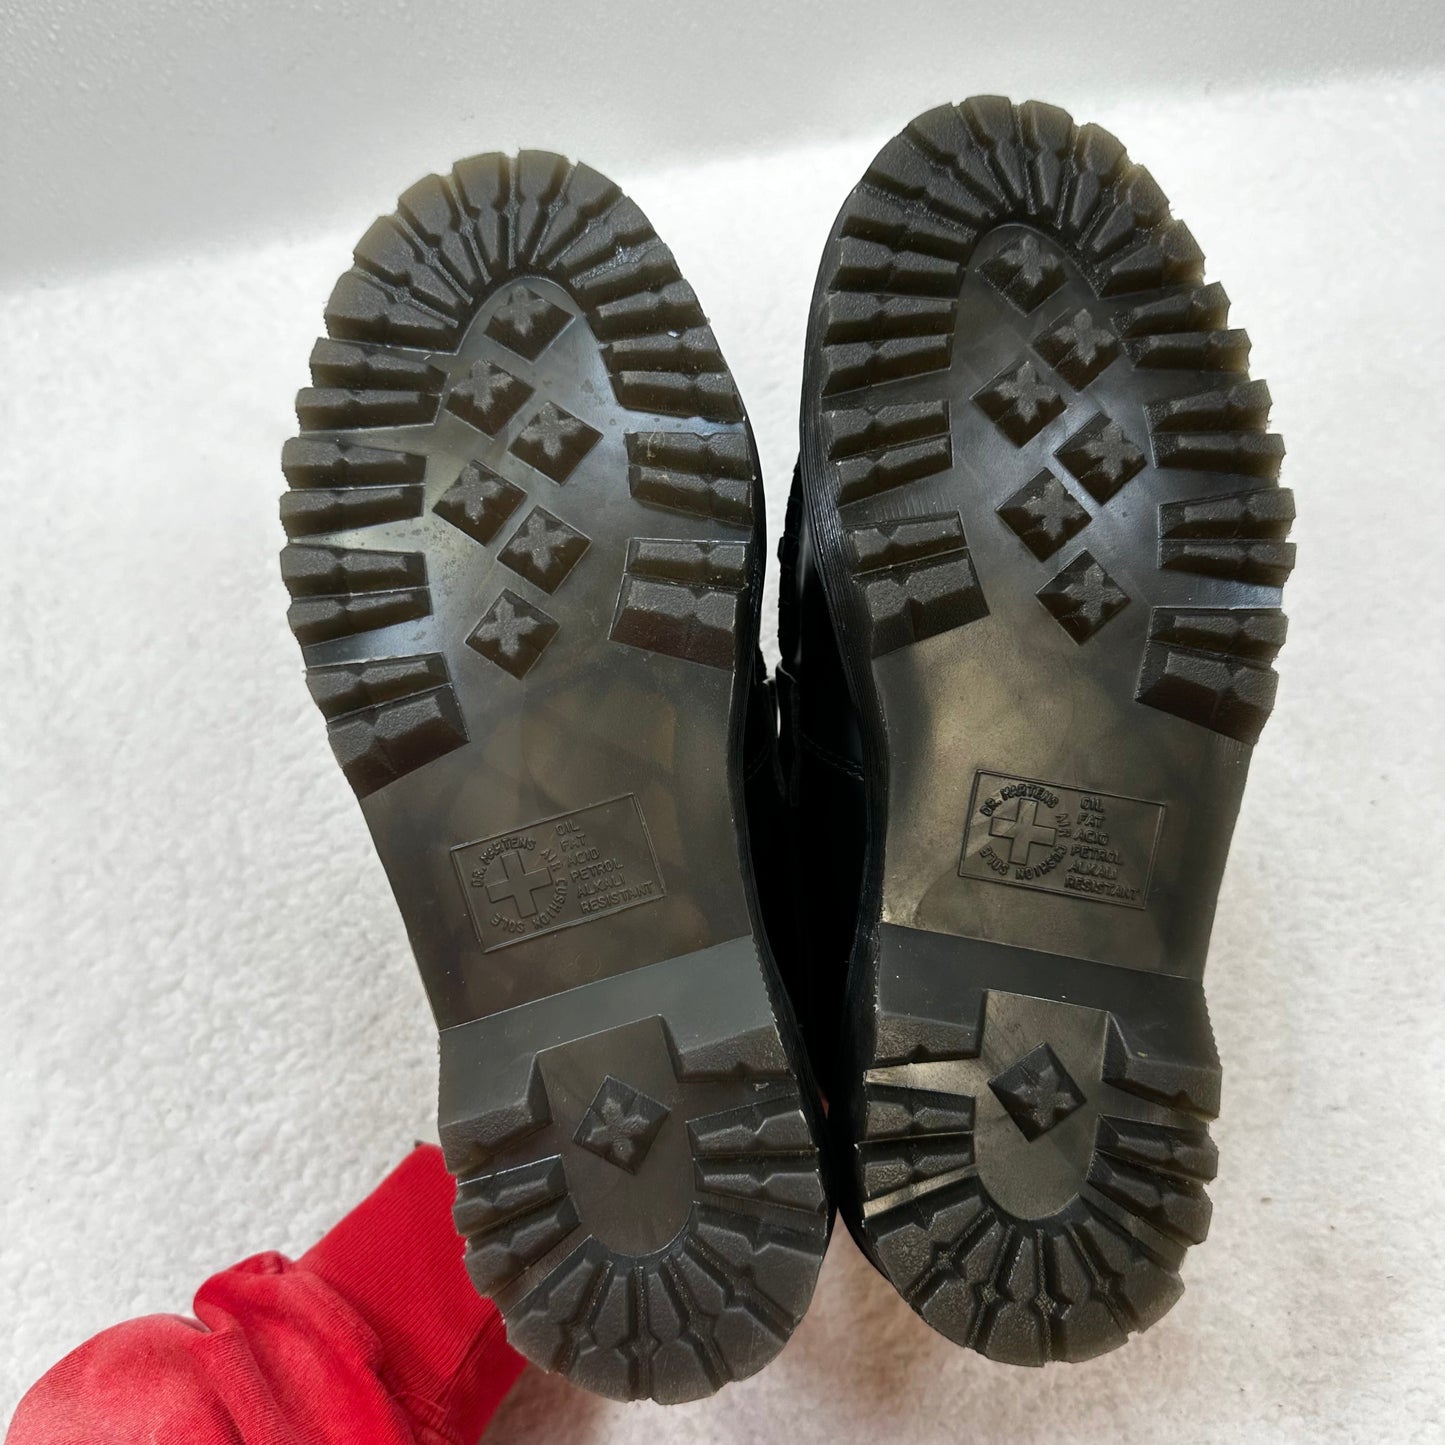 Black Shoes Flats Loafer Oxford Dr Martens, Size 8